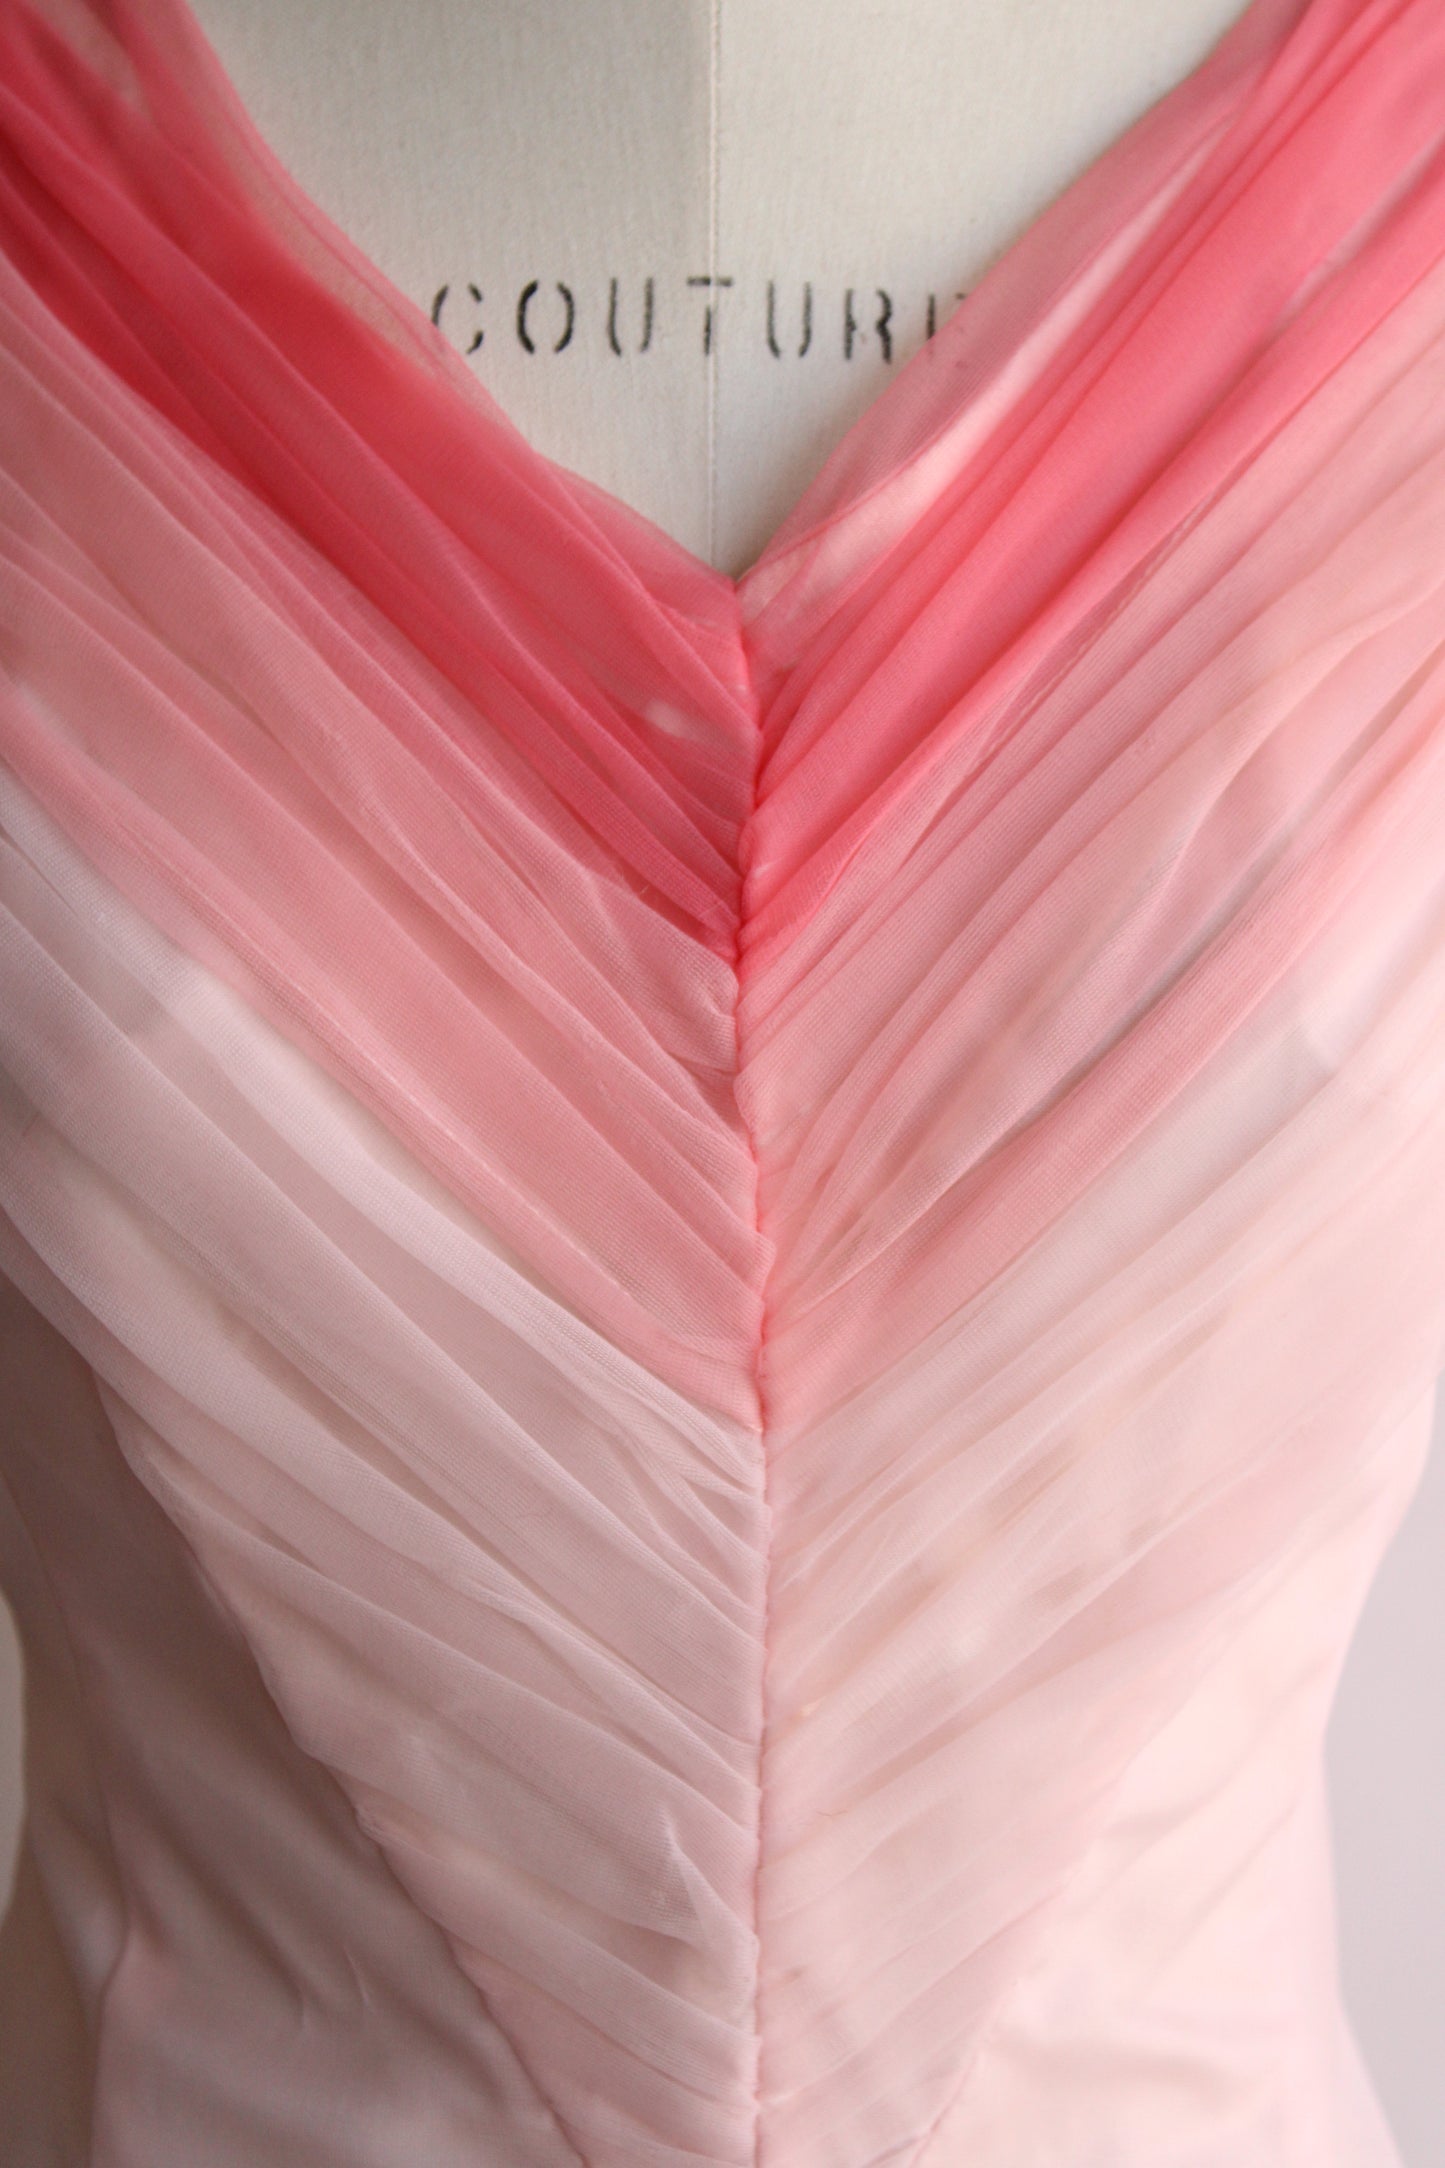 Vintage 1950s Emma Domb Pink Formal Gown